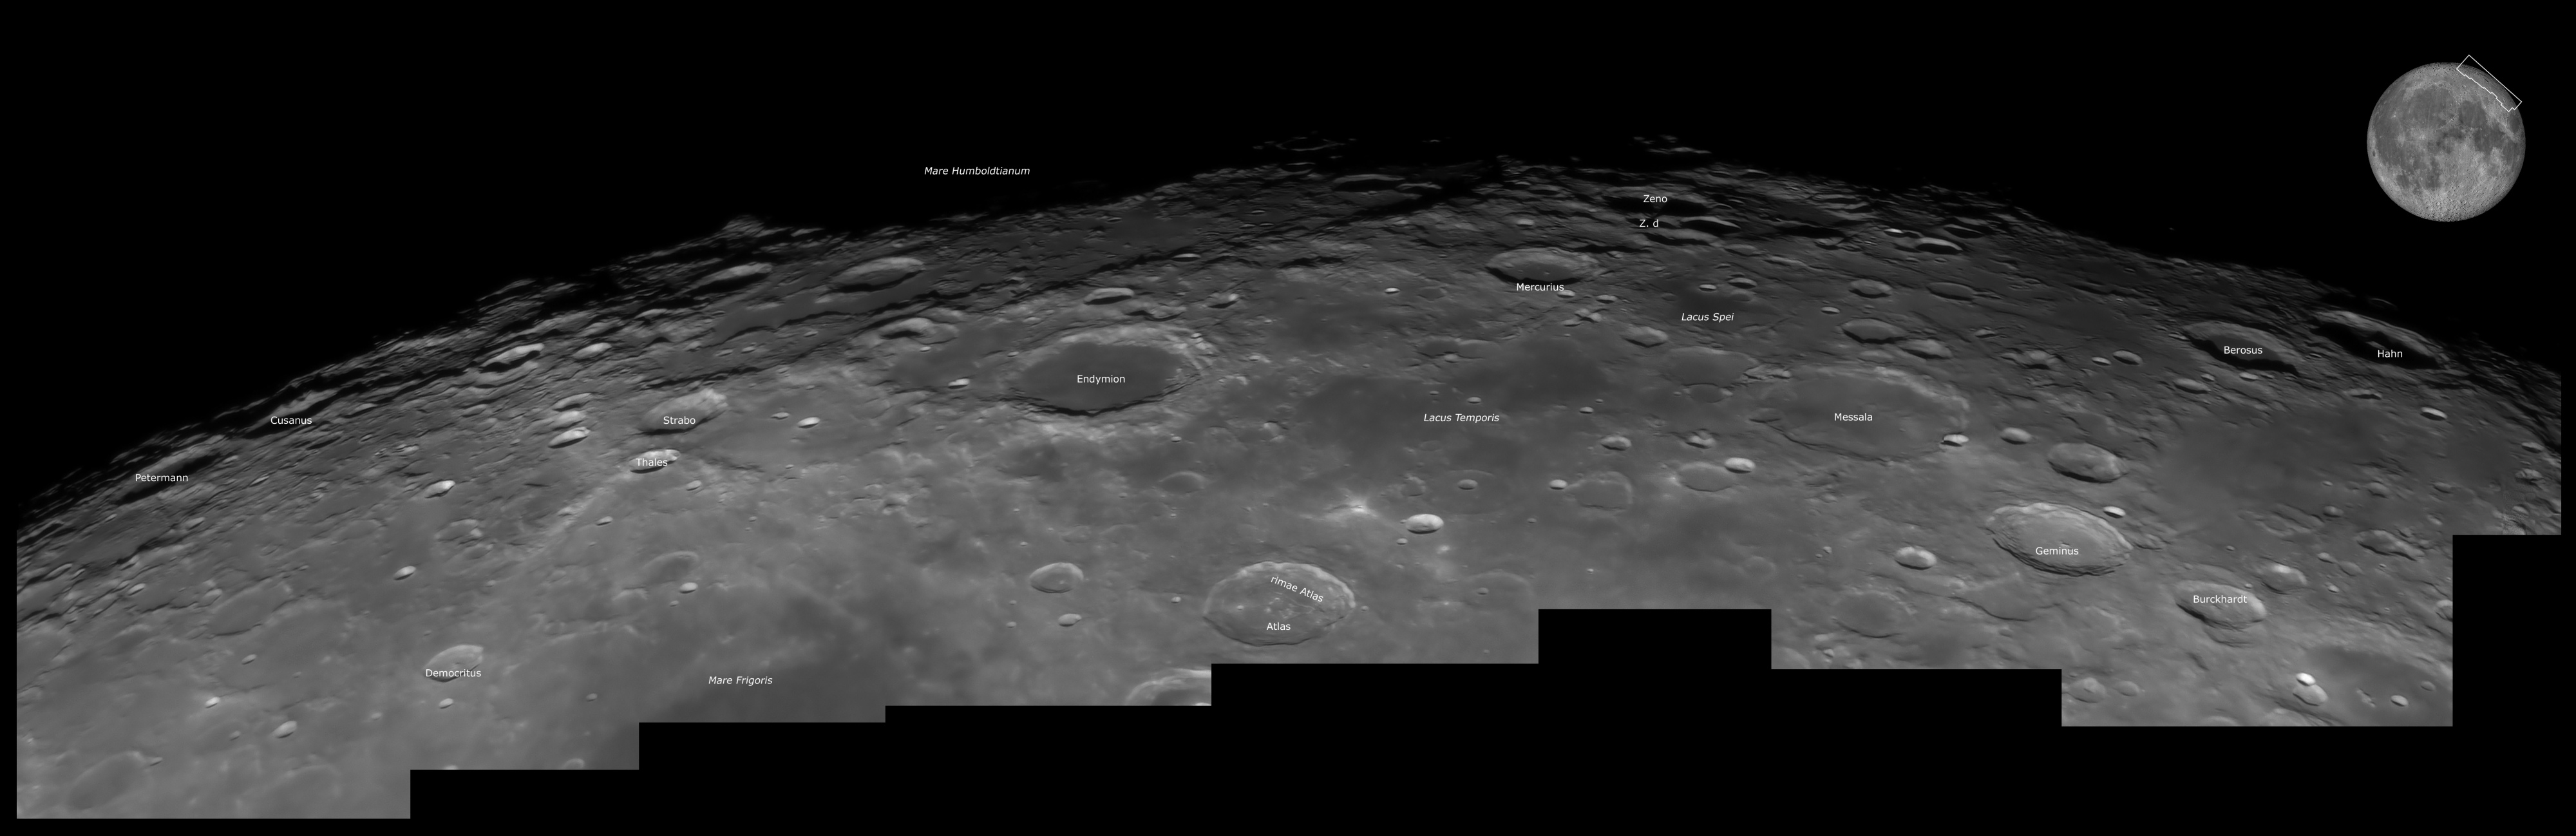 Région Nord-Est du bord lunaire, au 355 mm, anotée